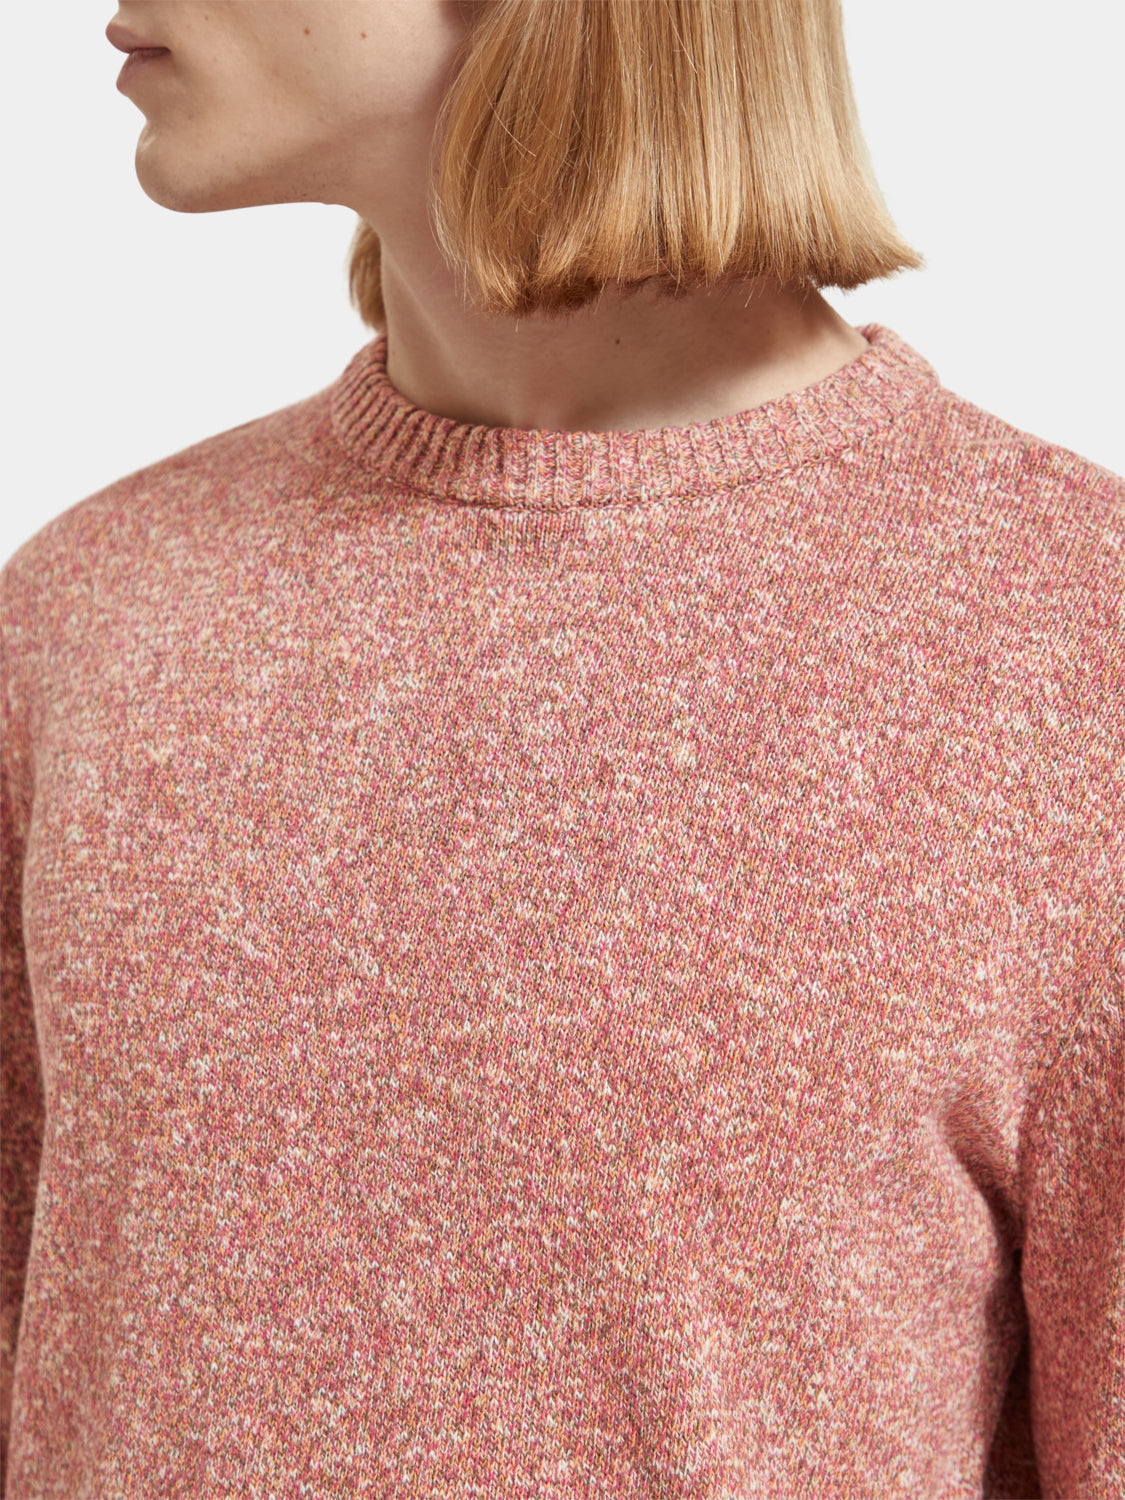 Melange crewneck sweater - Multi Colour Melange Pink